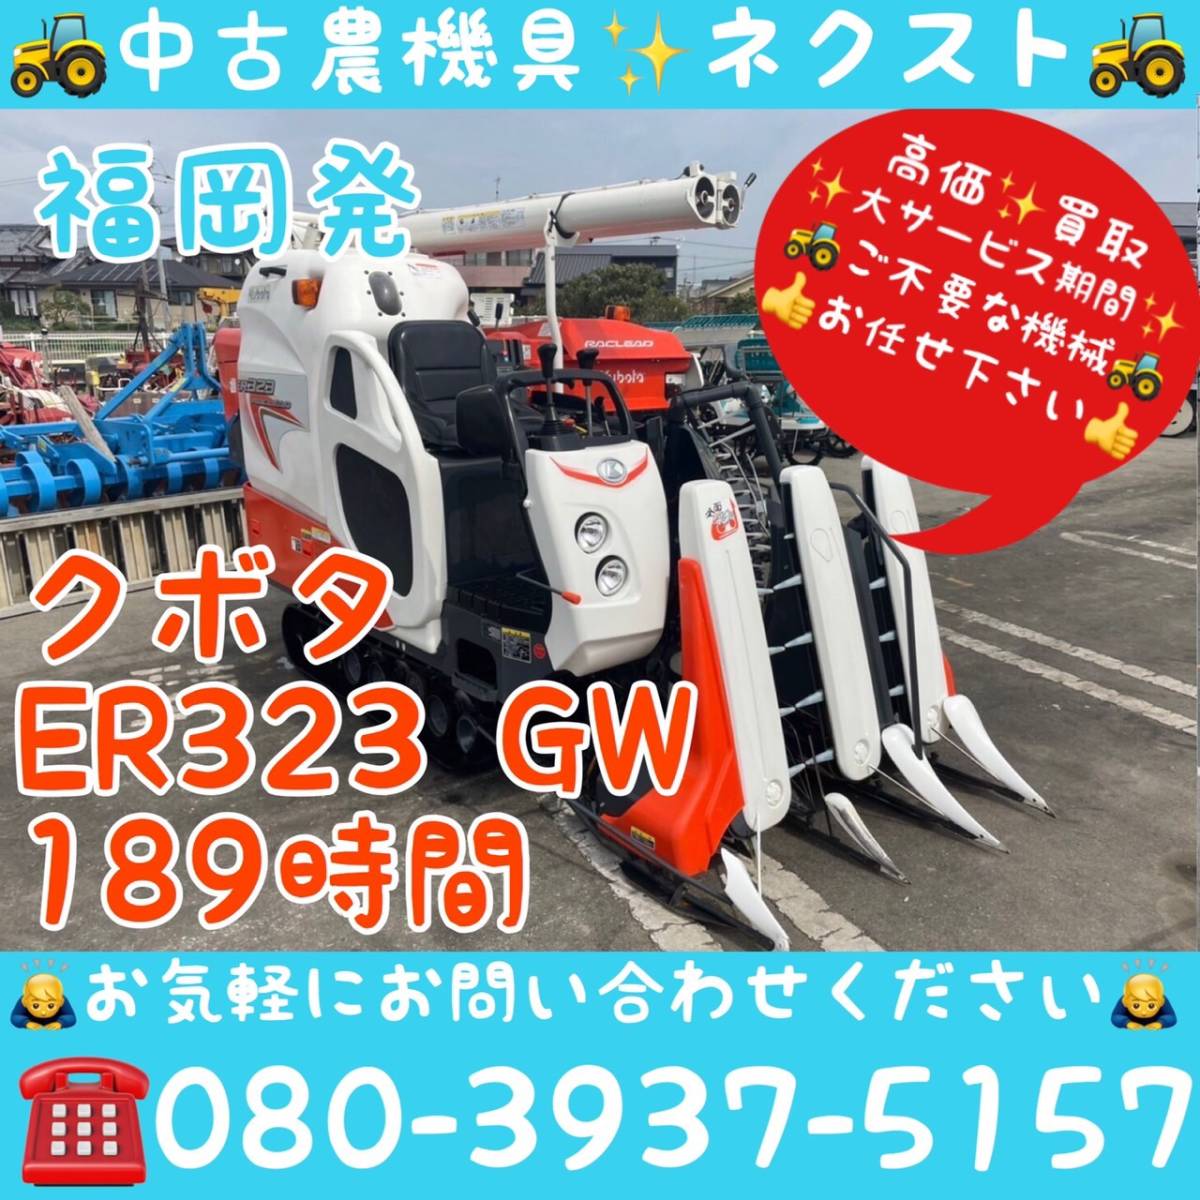 [大特価セール☆] クボタ ER323 グレンタンク 189時間 コンバイン 3条 福岡発